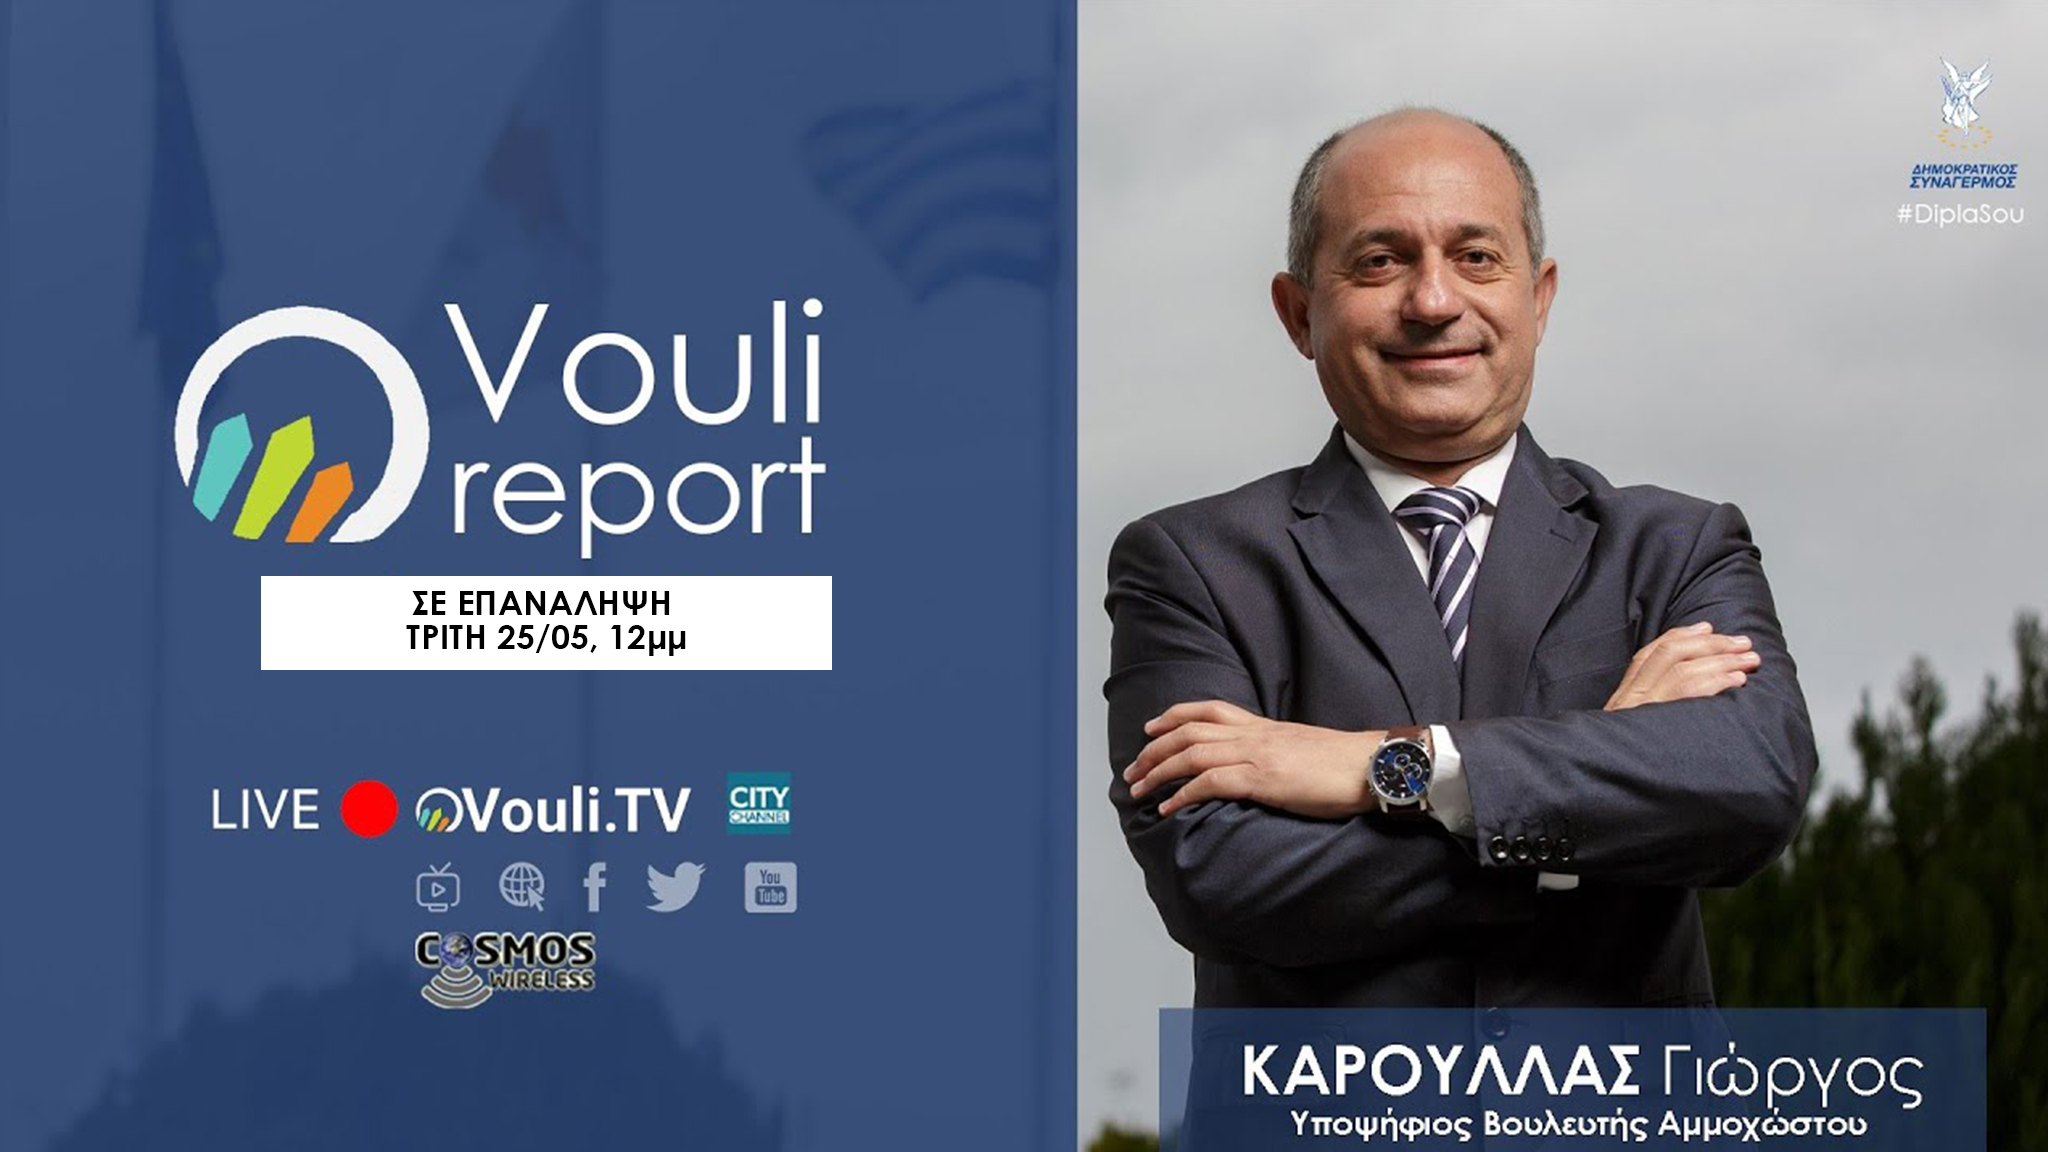 Σε επανάληψη | Vouli Report – Γιώργος Κάρουλλας, Δευτέρα 25/05/2021, 12μμ